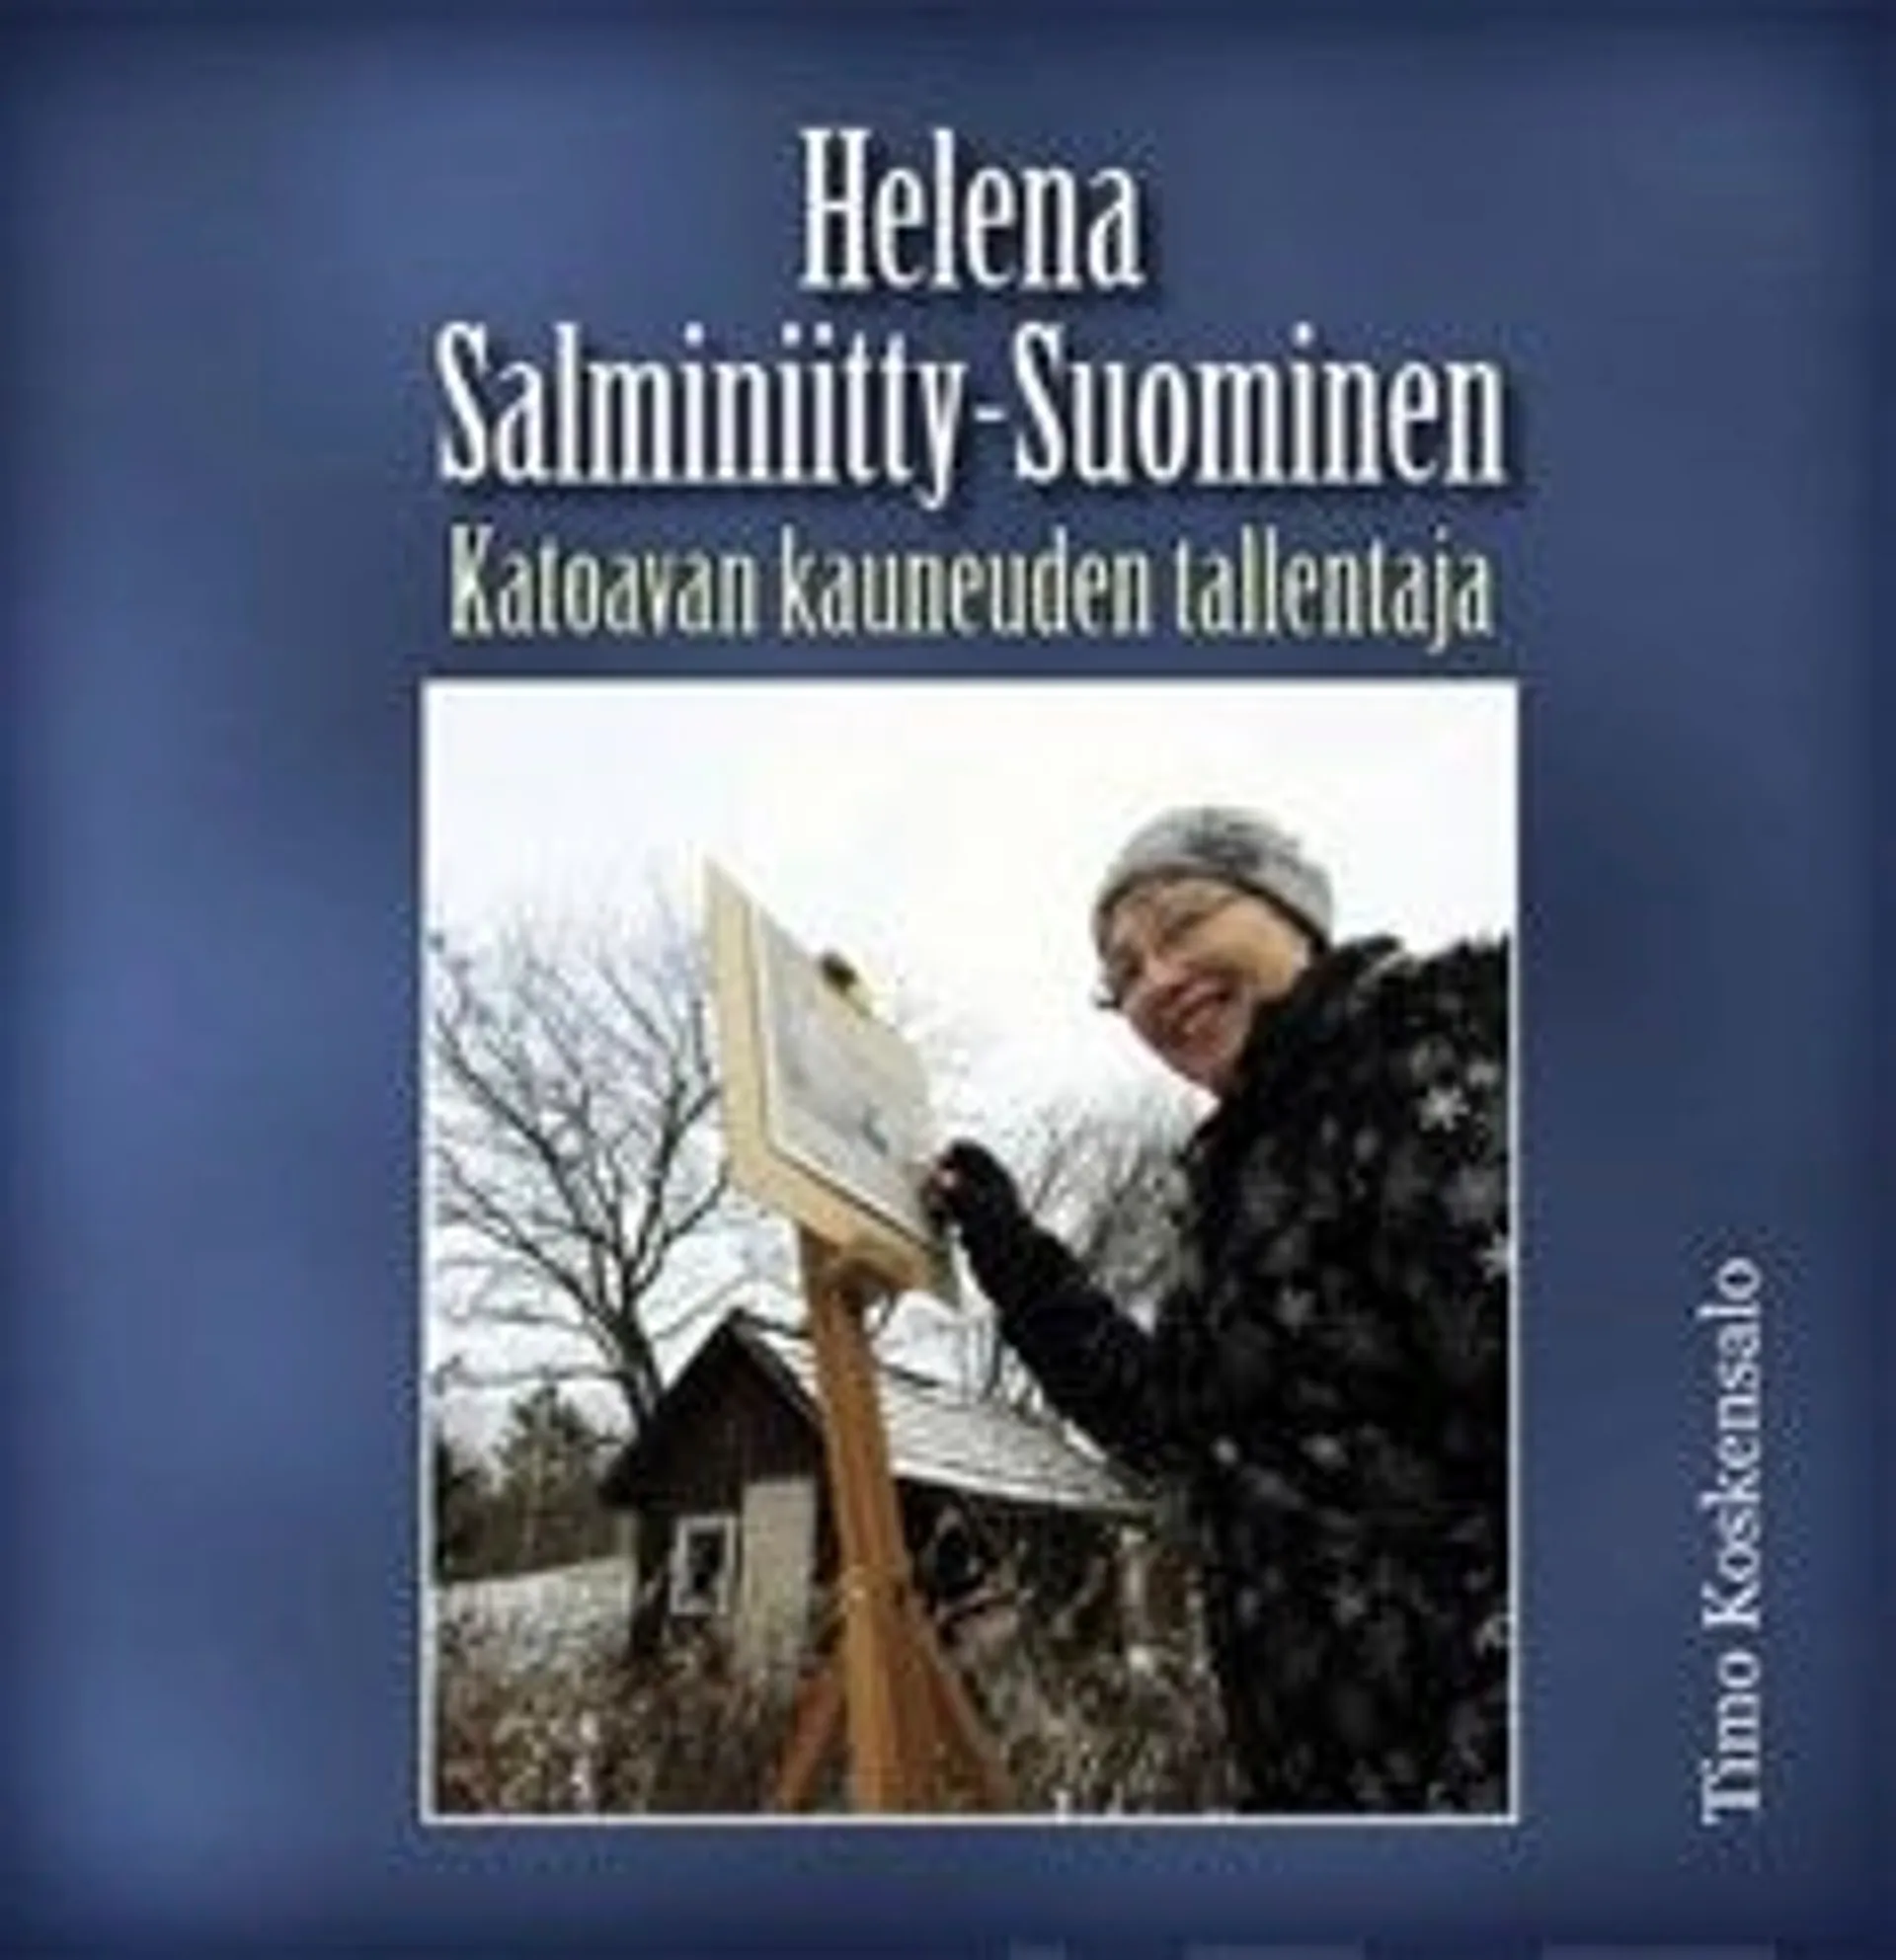 Koskensalo, Helena Salmenniitty-Suominen